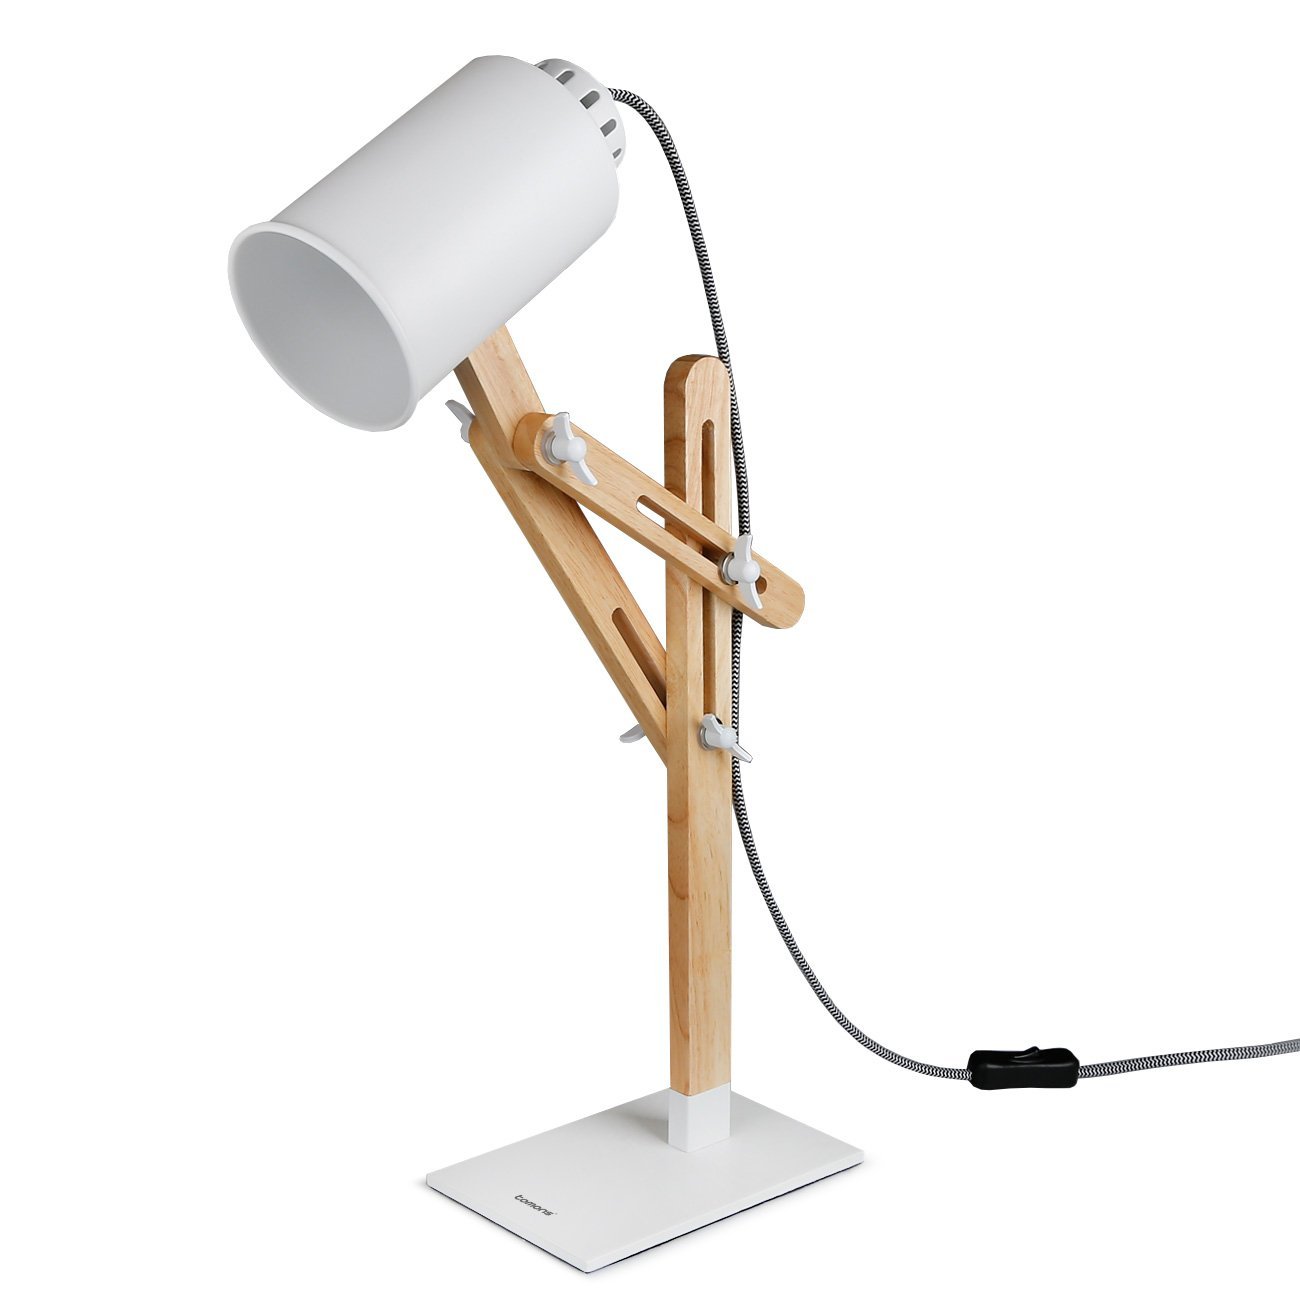 Bild zu Tomons Holz Designer Lampe mit Schwenkarm und verschiedenen Lichtfarben für 23,99€